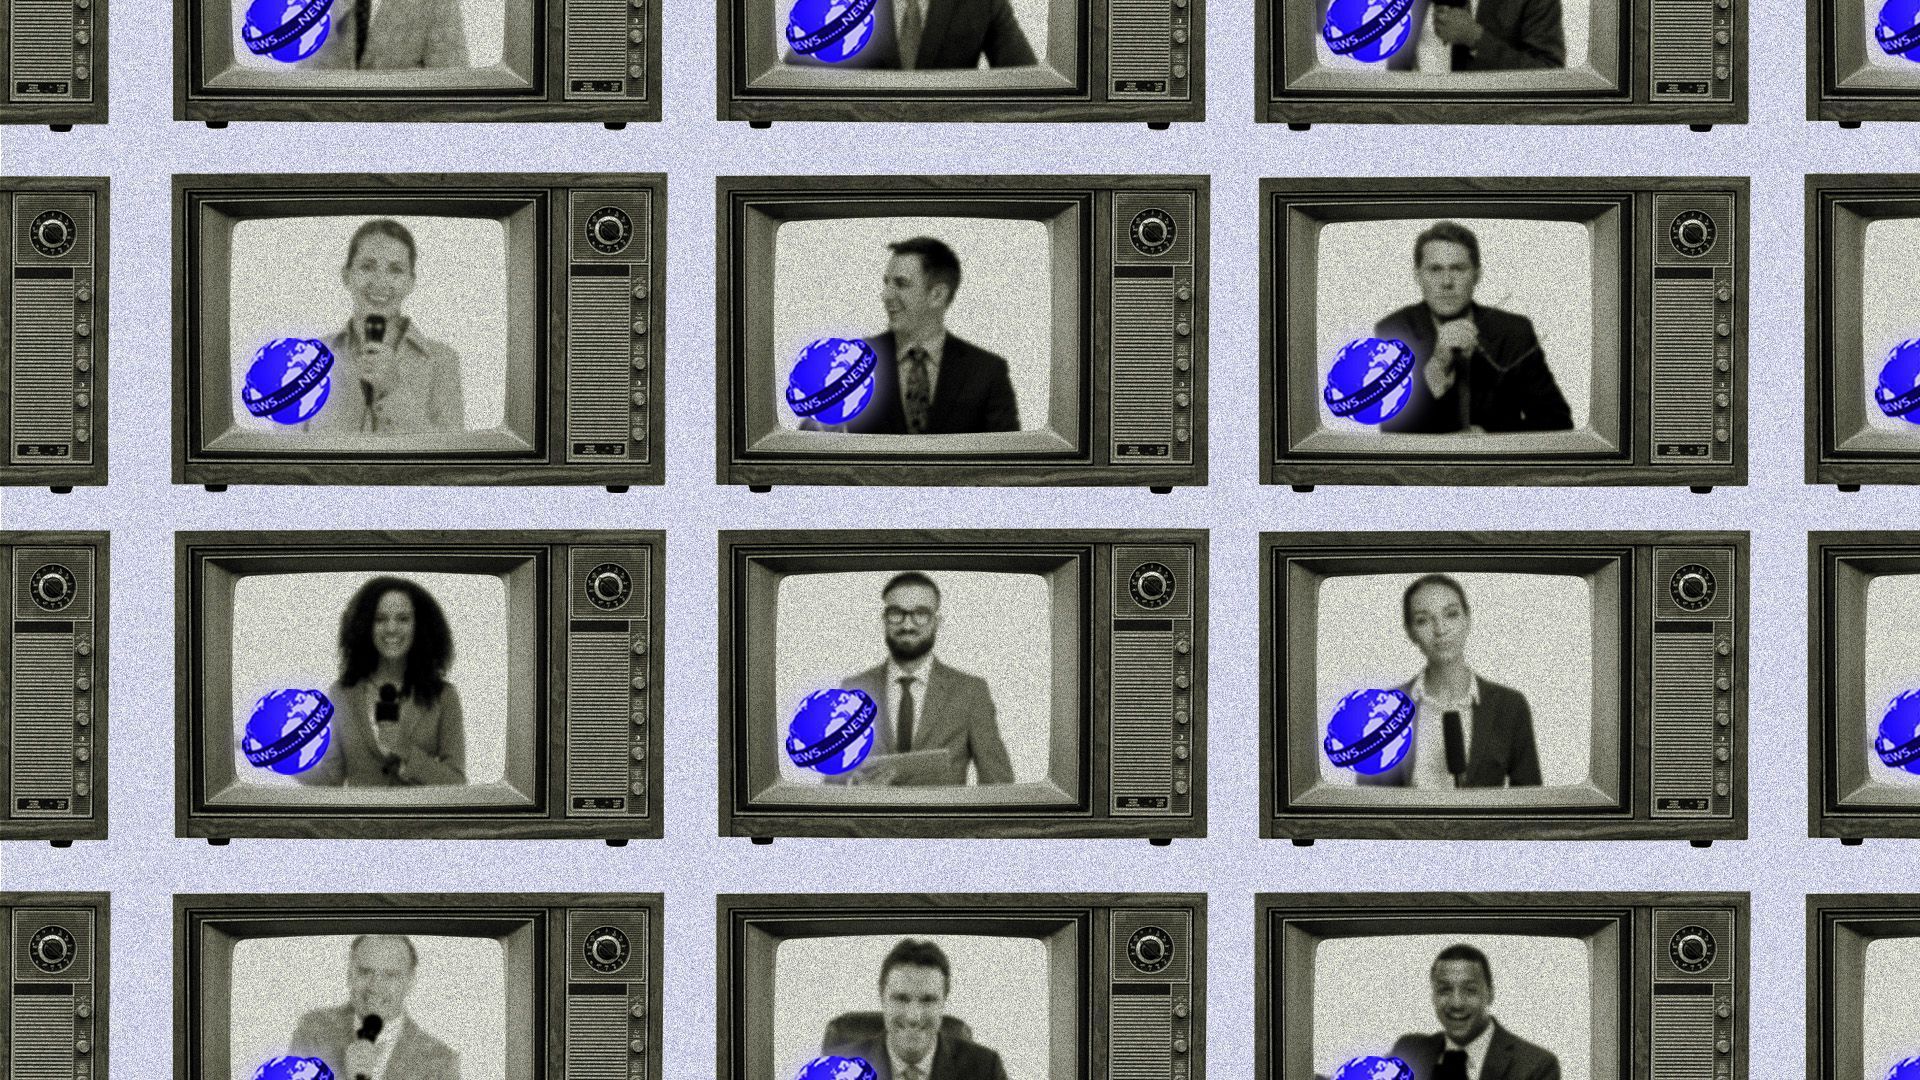 An image of various TVs